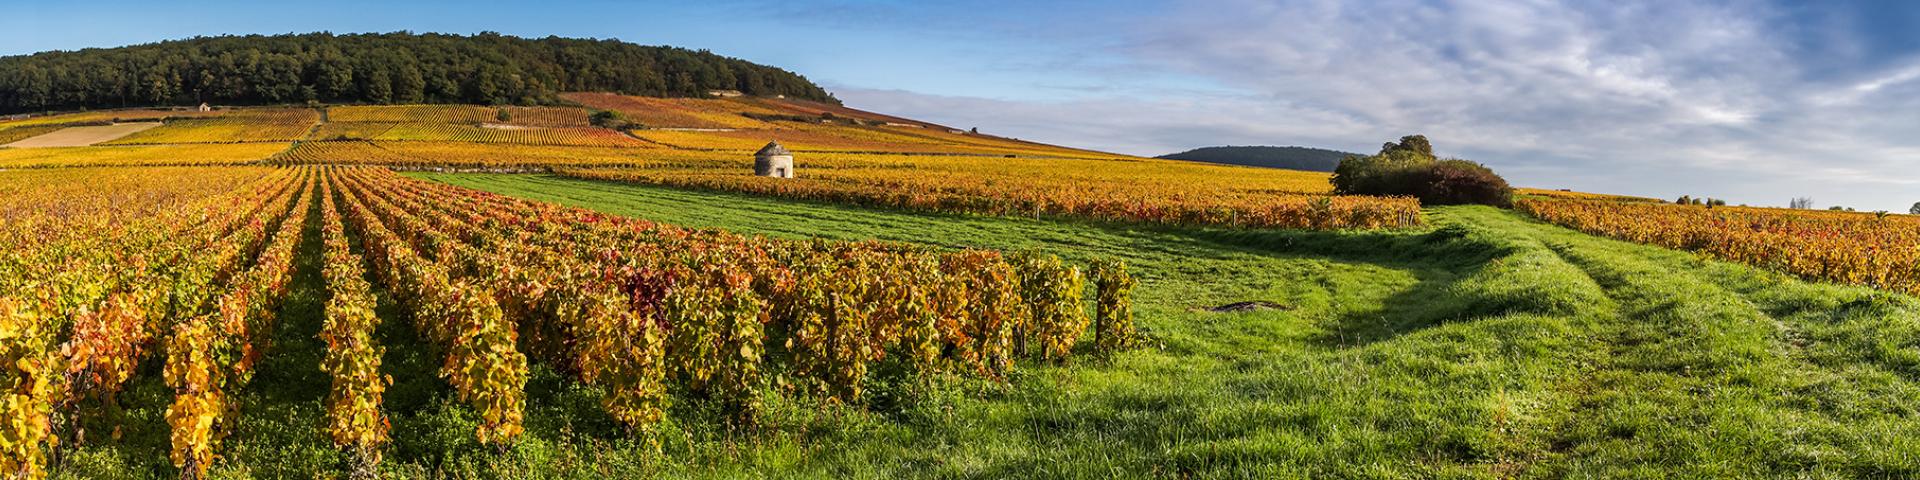 Panoramic view of the vineyards, Burgundy